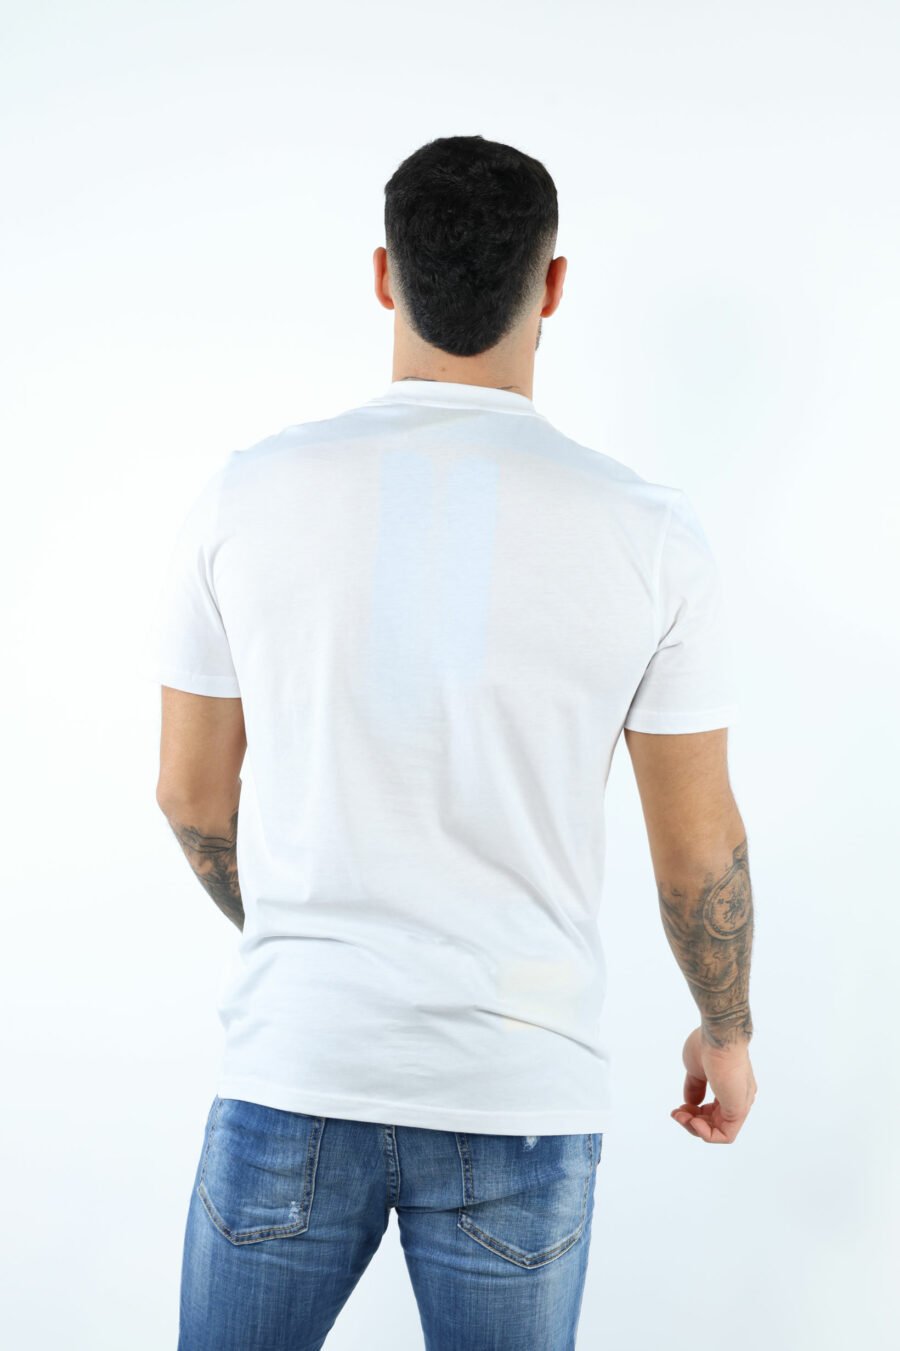 Camiseta blanca "oversize" de algodón orgánico con maxilogo negro clásico - 106648